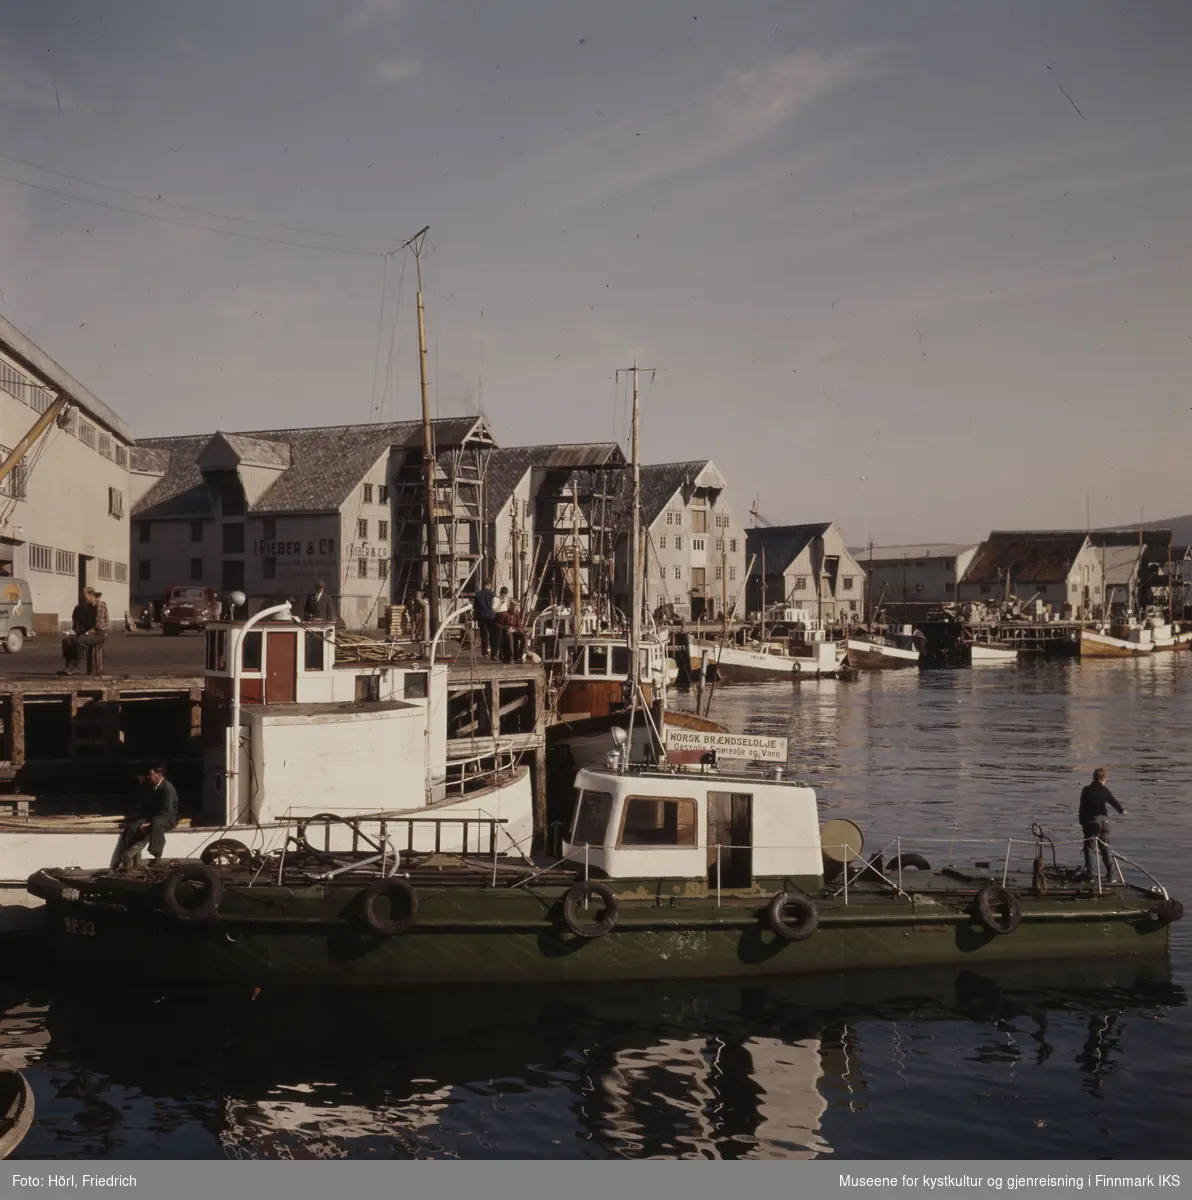 Havnesceneri i Tromsø i 1957 eller 1958. I forgrunnen ser man en grønn båt med et skilt for "Norsk Brændselsolje A/S". Ellers ser man fiskebåter ved kaia og mange pakkhus, blant annet til "Rieber & Co. A/S". Det ser ut som om det er flott vær og menn sitter på fiskebåten fremst i bilde samt på kaia.